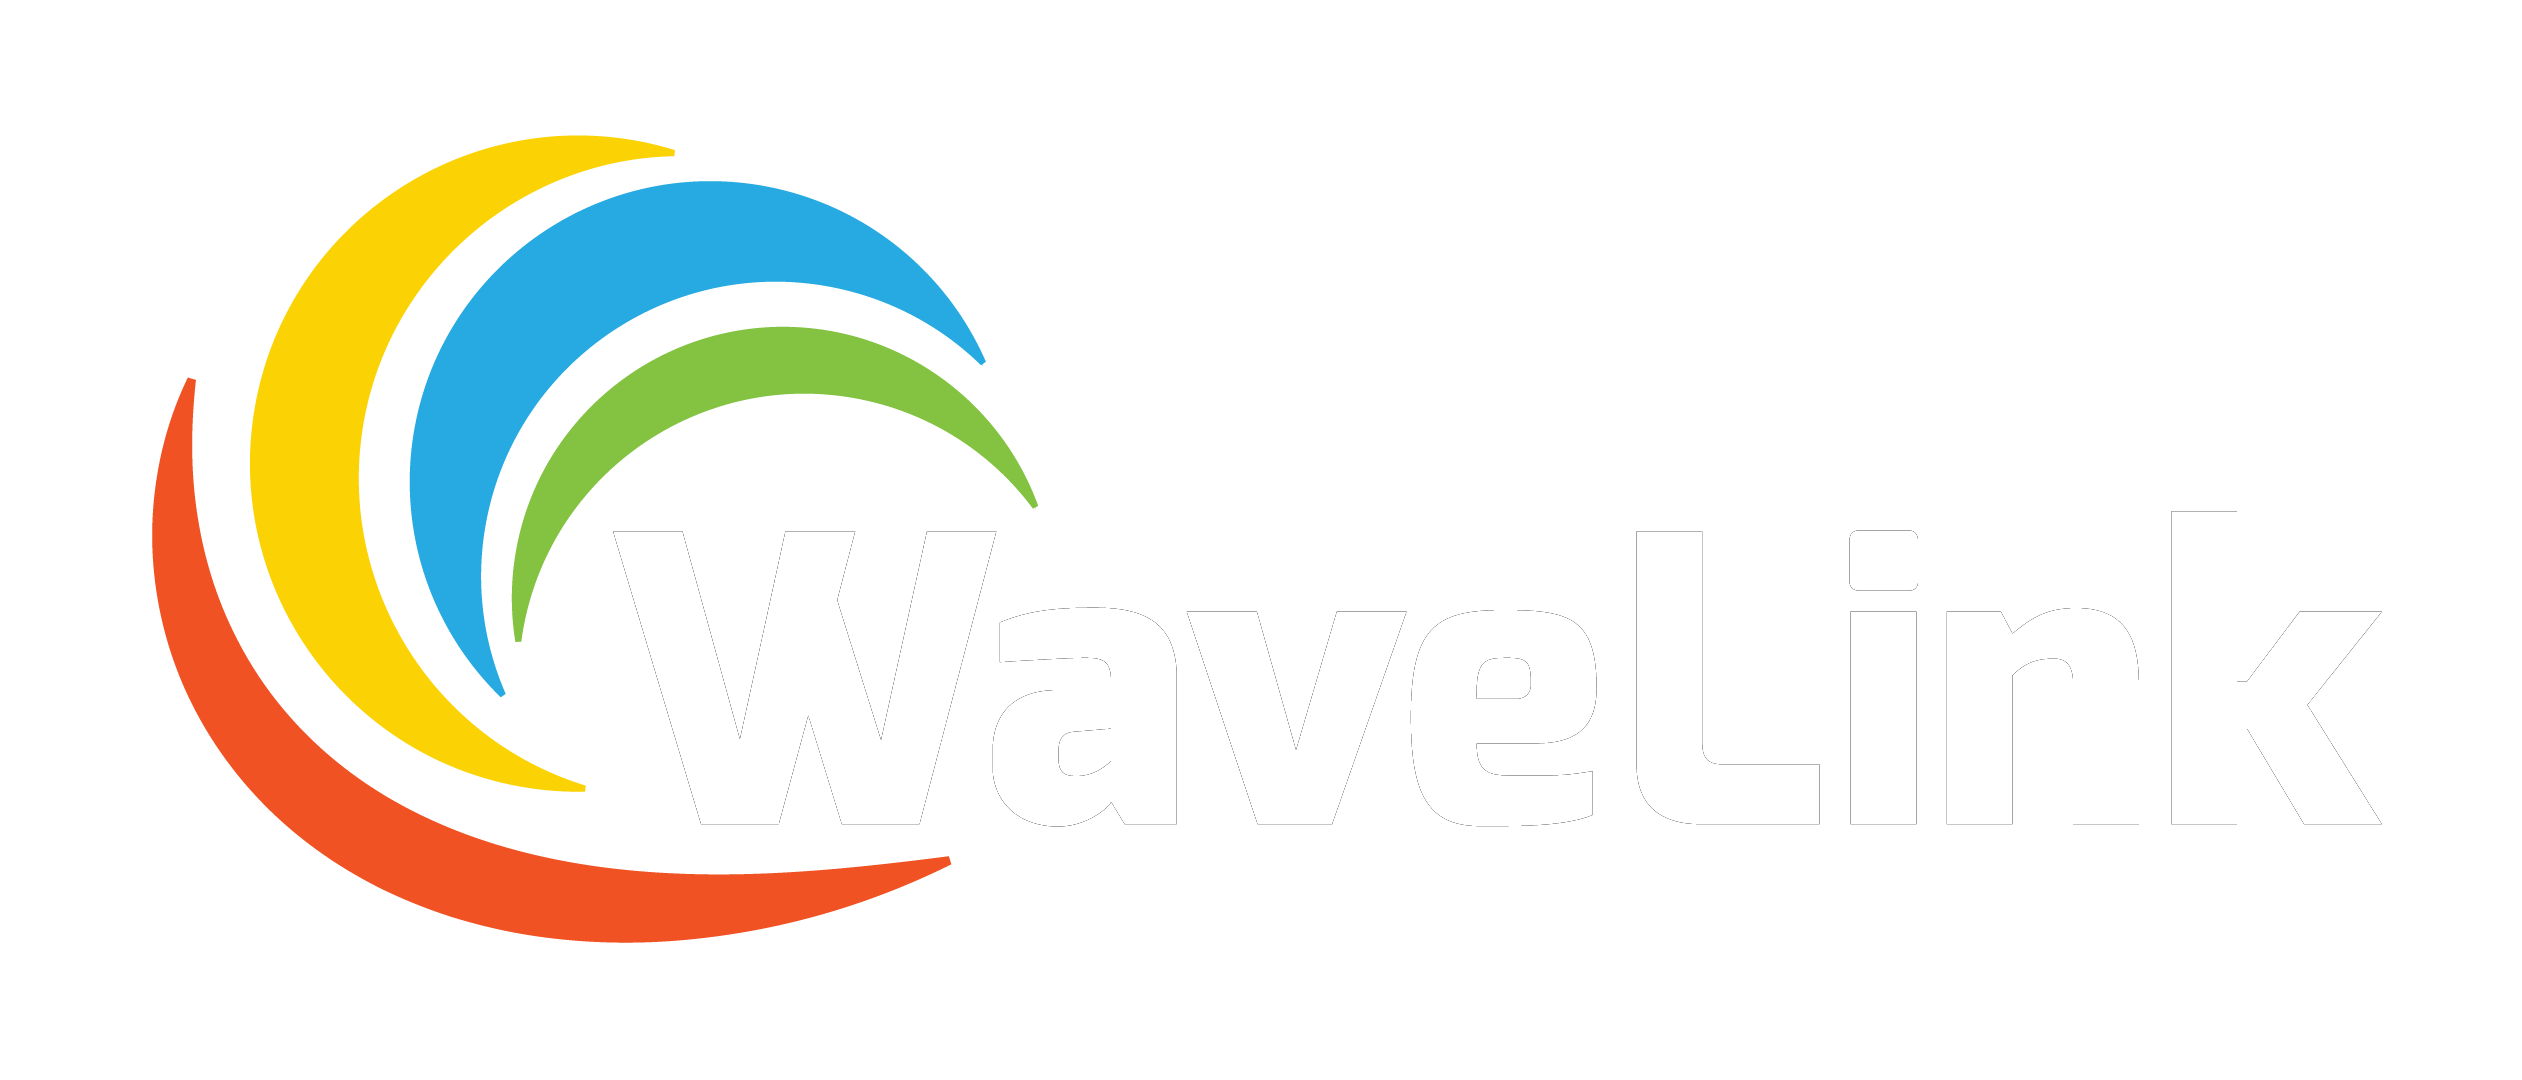 Wave Link, LLC - High-Quality Mobile Apps, Websites, & Graphics